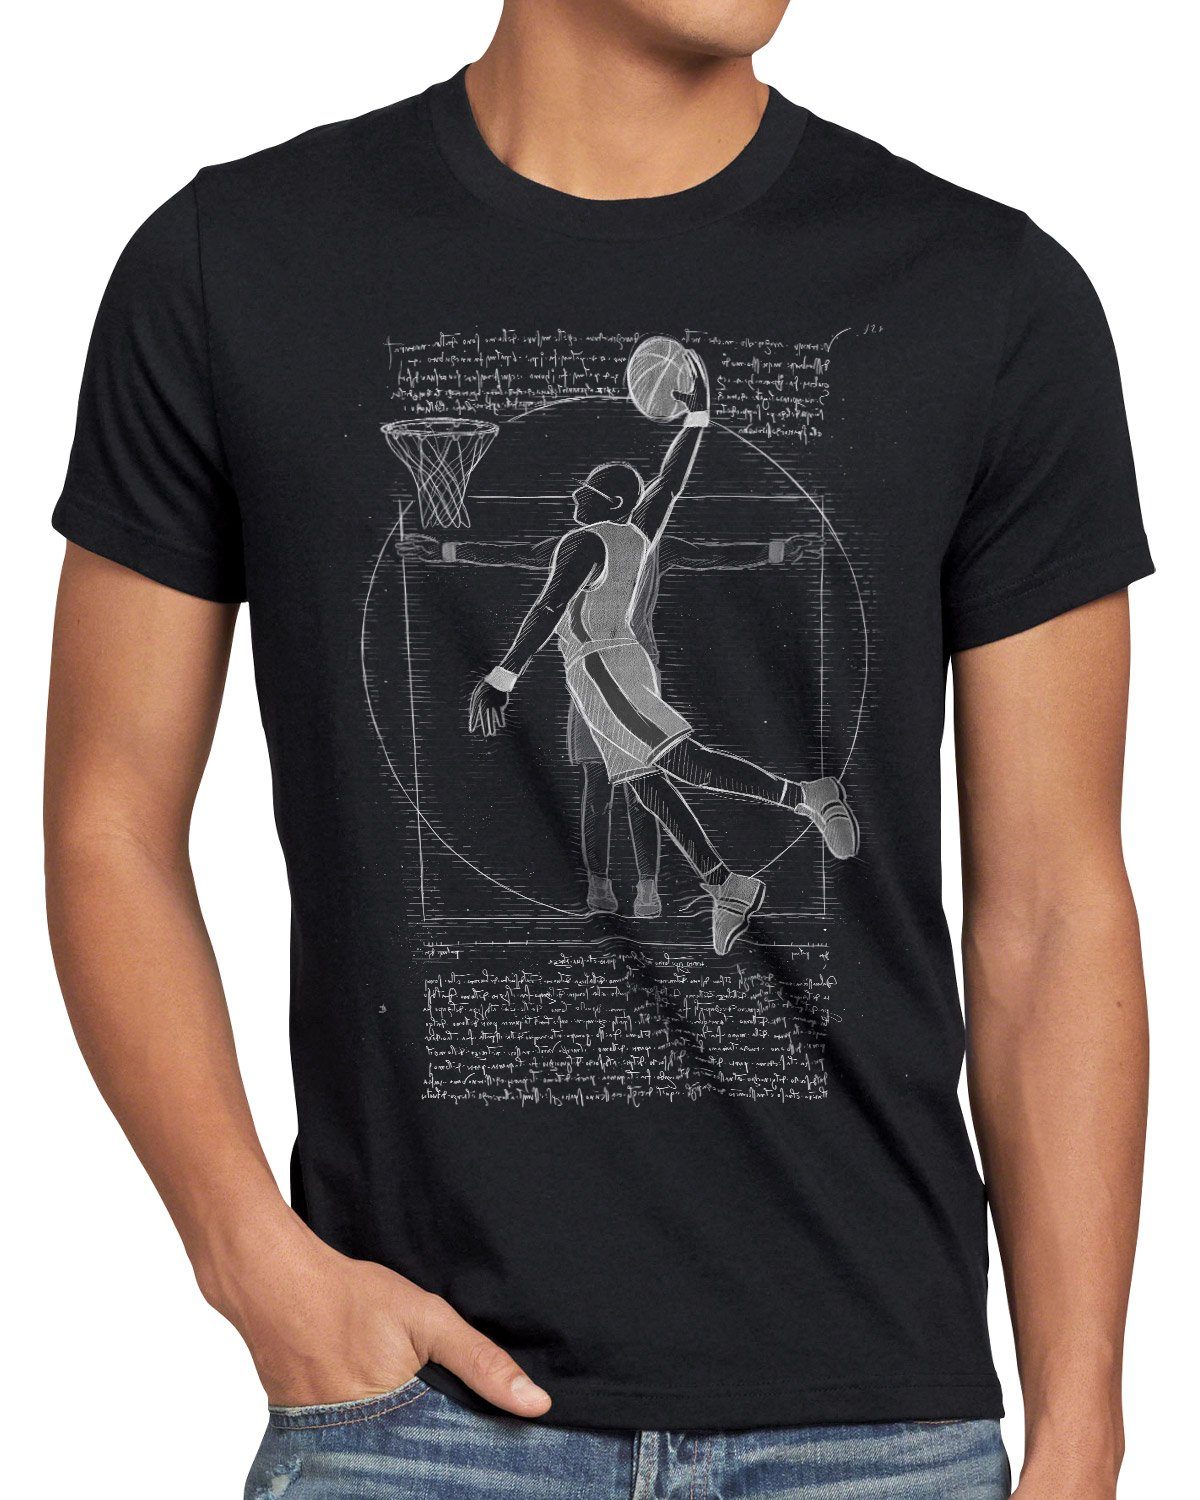 T-Shirt vinci da mensch Herren schwarz Basketballspieler Print-Shirt ballsport Vitruvianischer style3